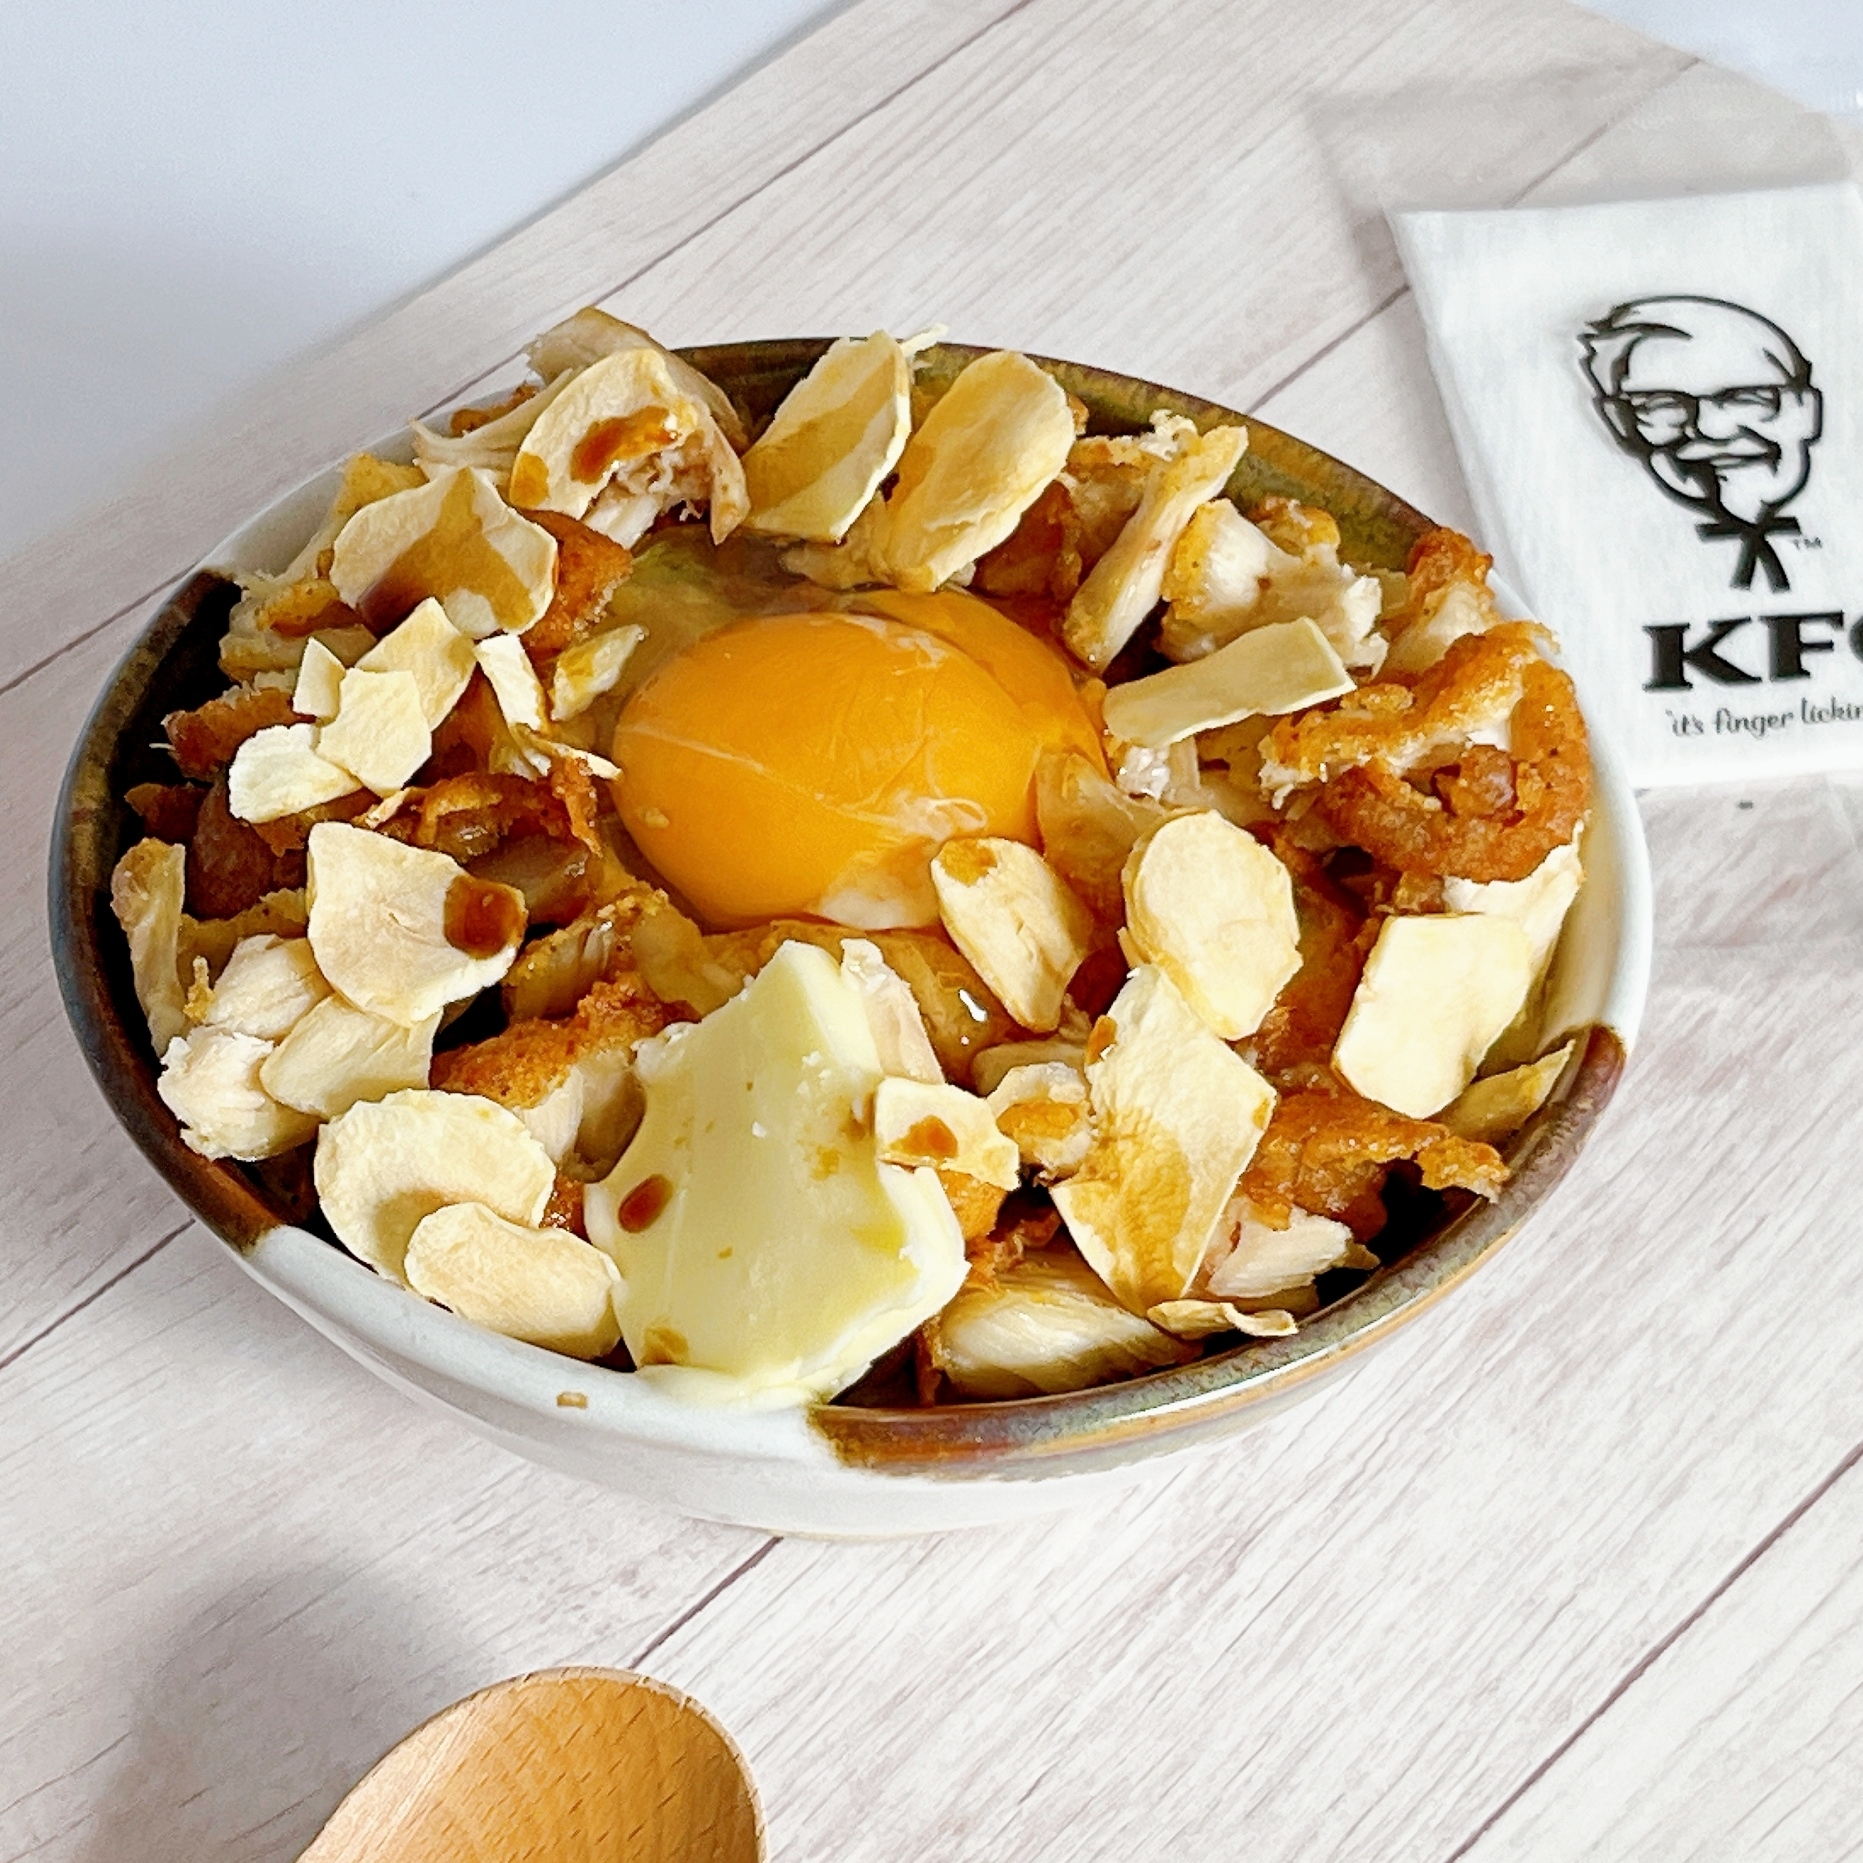 KFC（ケンタッキー・フライド・チキン）のアレンジレシピ「ガーリックTKG」